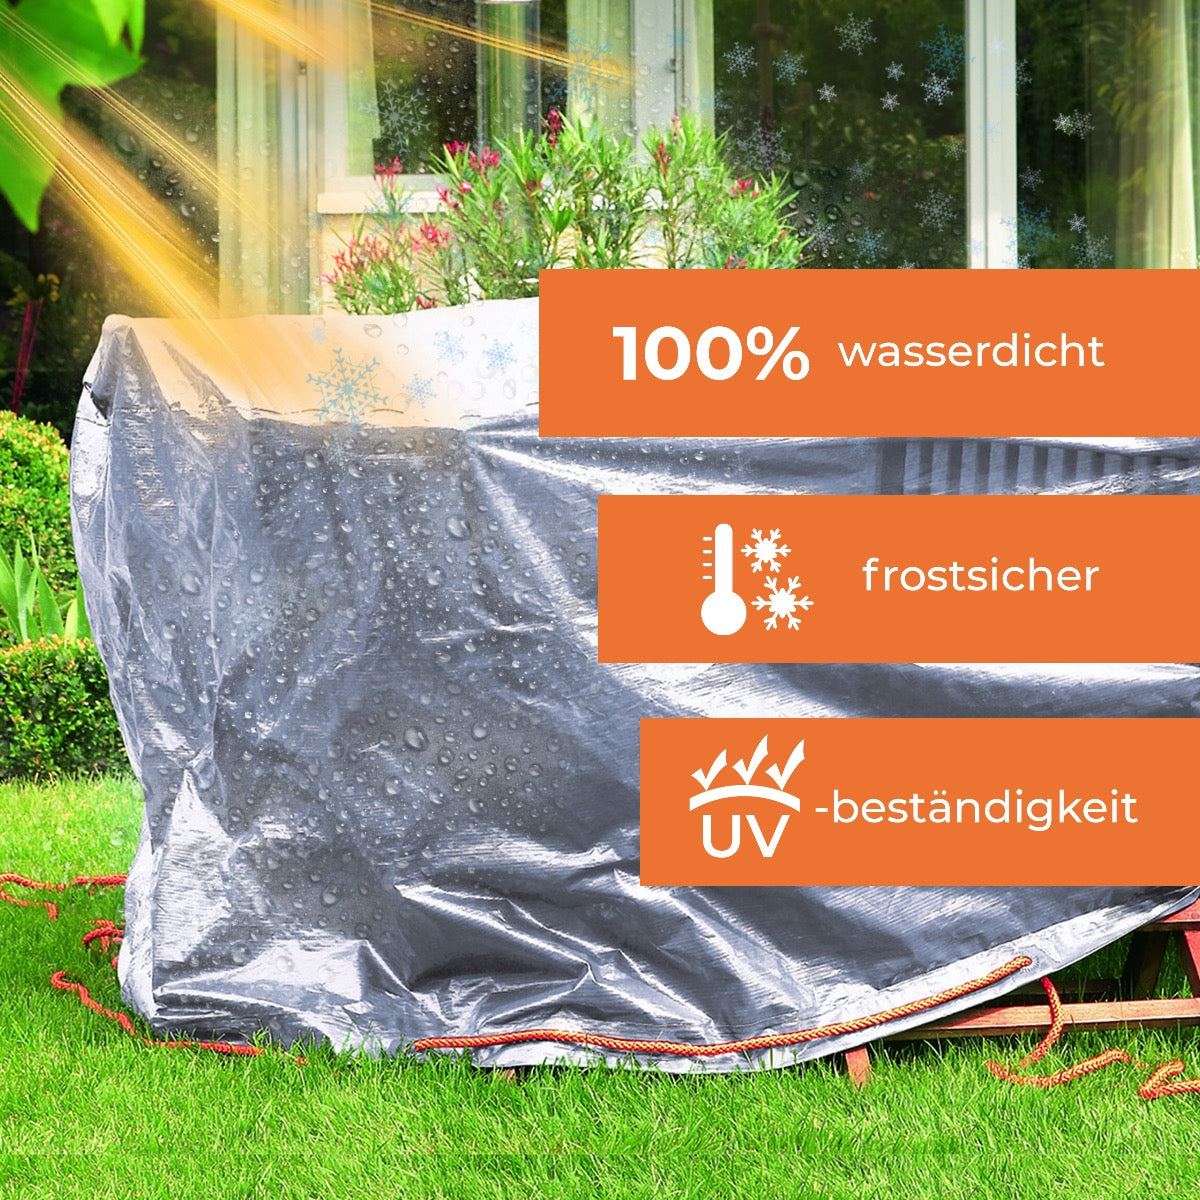 Rainexo Gartentisch-Schutzhülle - 100% wasserdicht, frostsicher und UV-beständig - silbergrau - oval